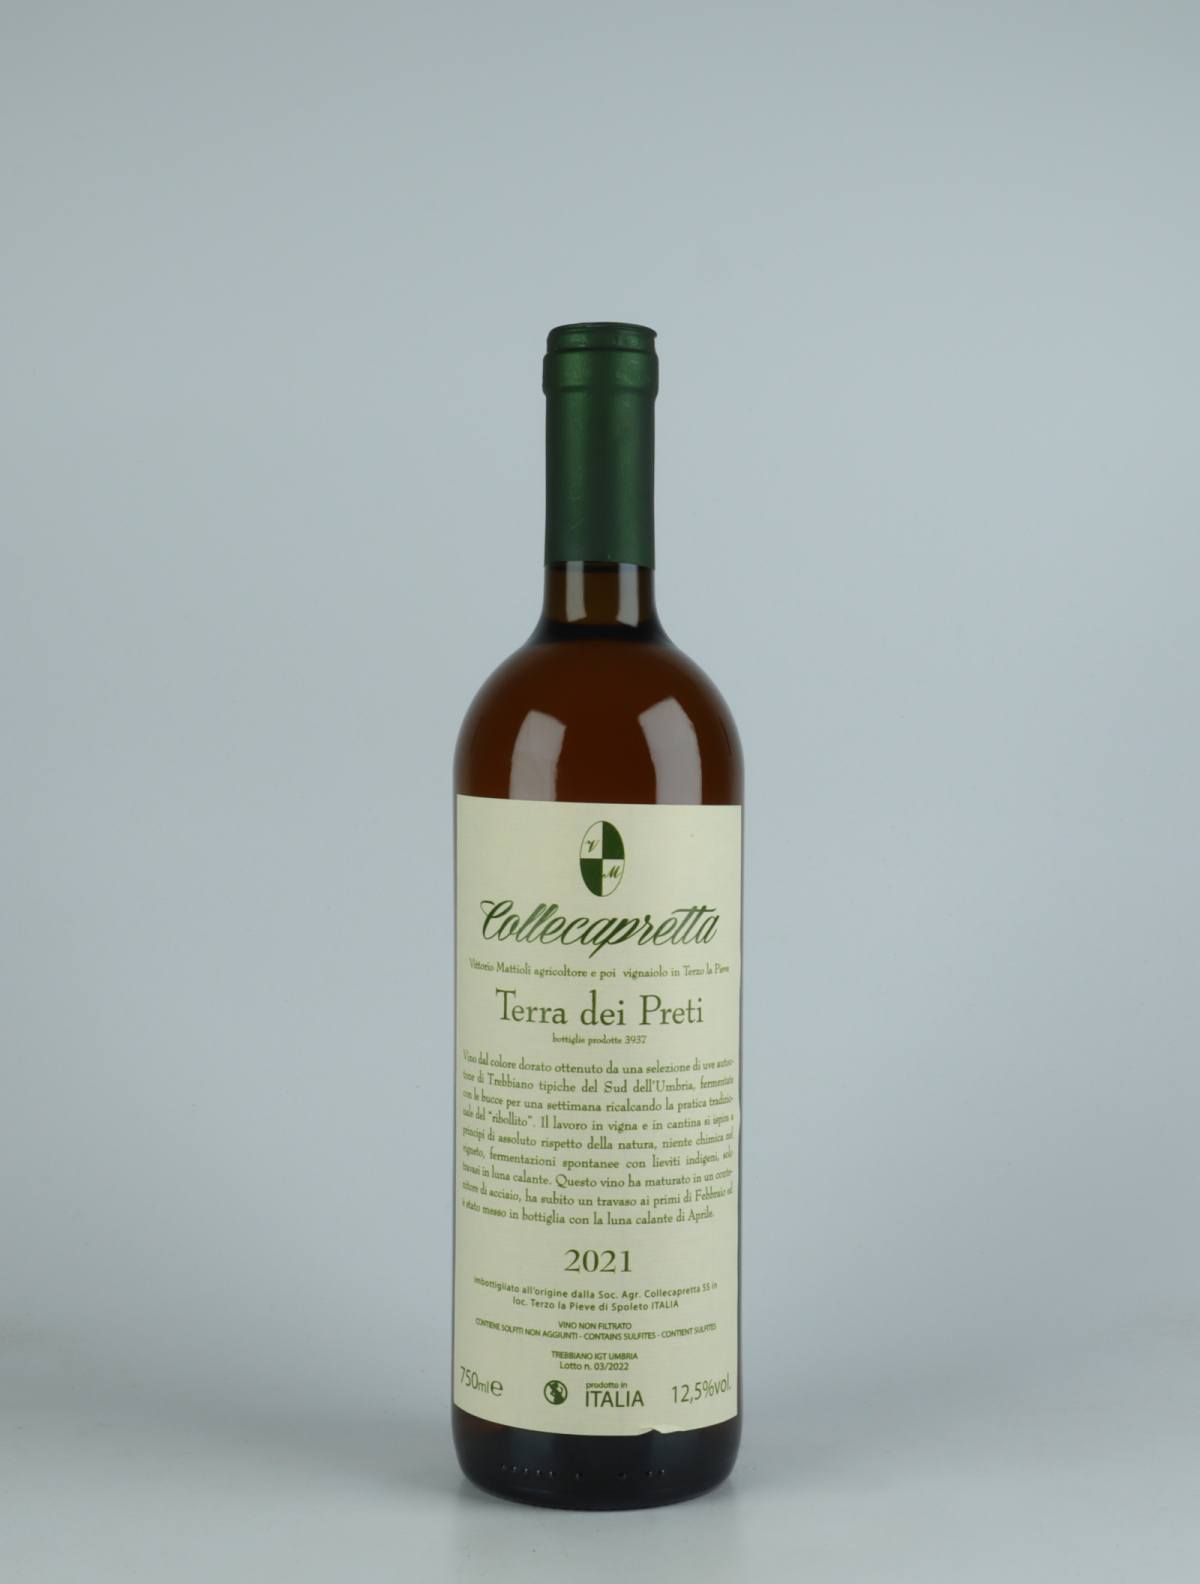 En flaske 2021 Terra dei Preti Orange vin fra Collecapretta, Umbrien i Italien